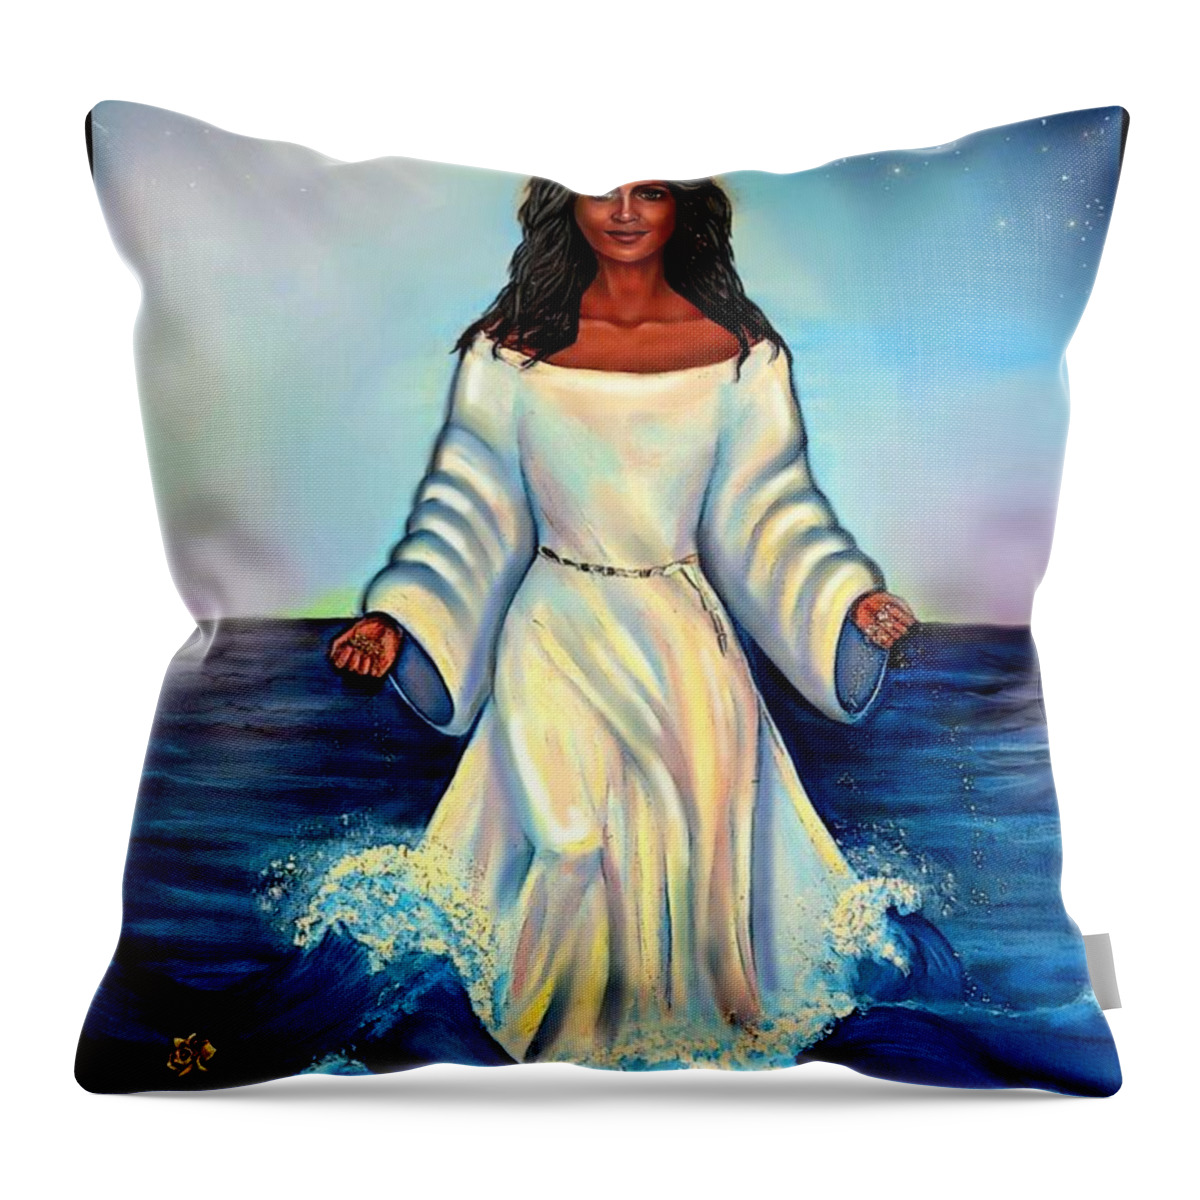 Yemaya Throw Pillow featuring the digital art Yemaya- Mother of all Orishas by Carmen Cordova